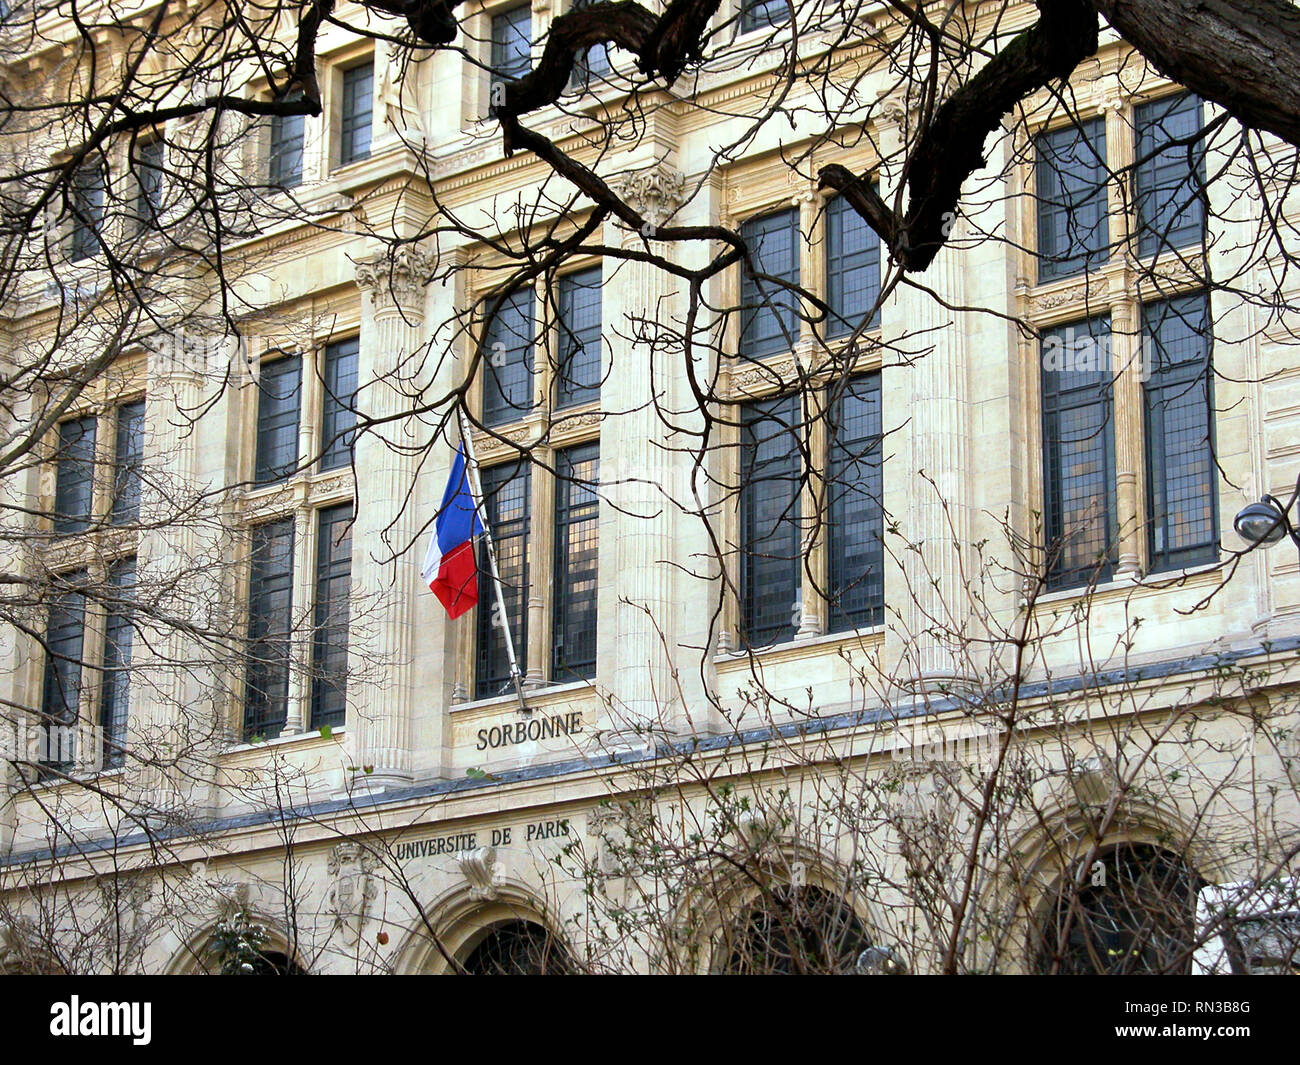 Université de Paris-Sorbonne, Rue des Écoles, 5th arrondissement, Paris, France: frontage detail Stock Photo